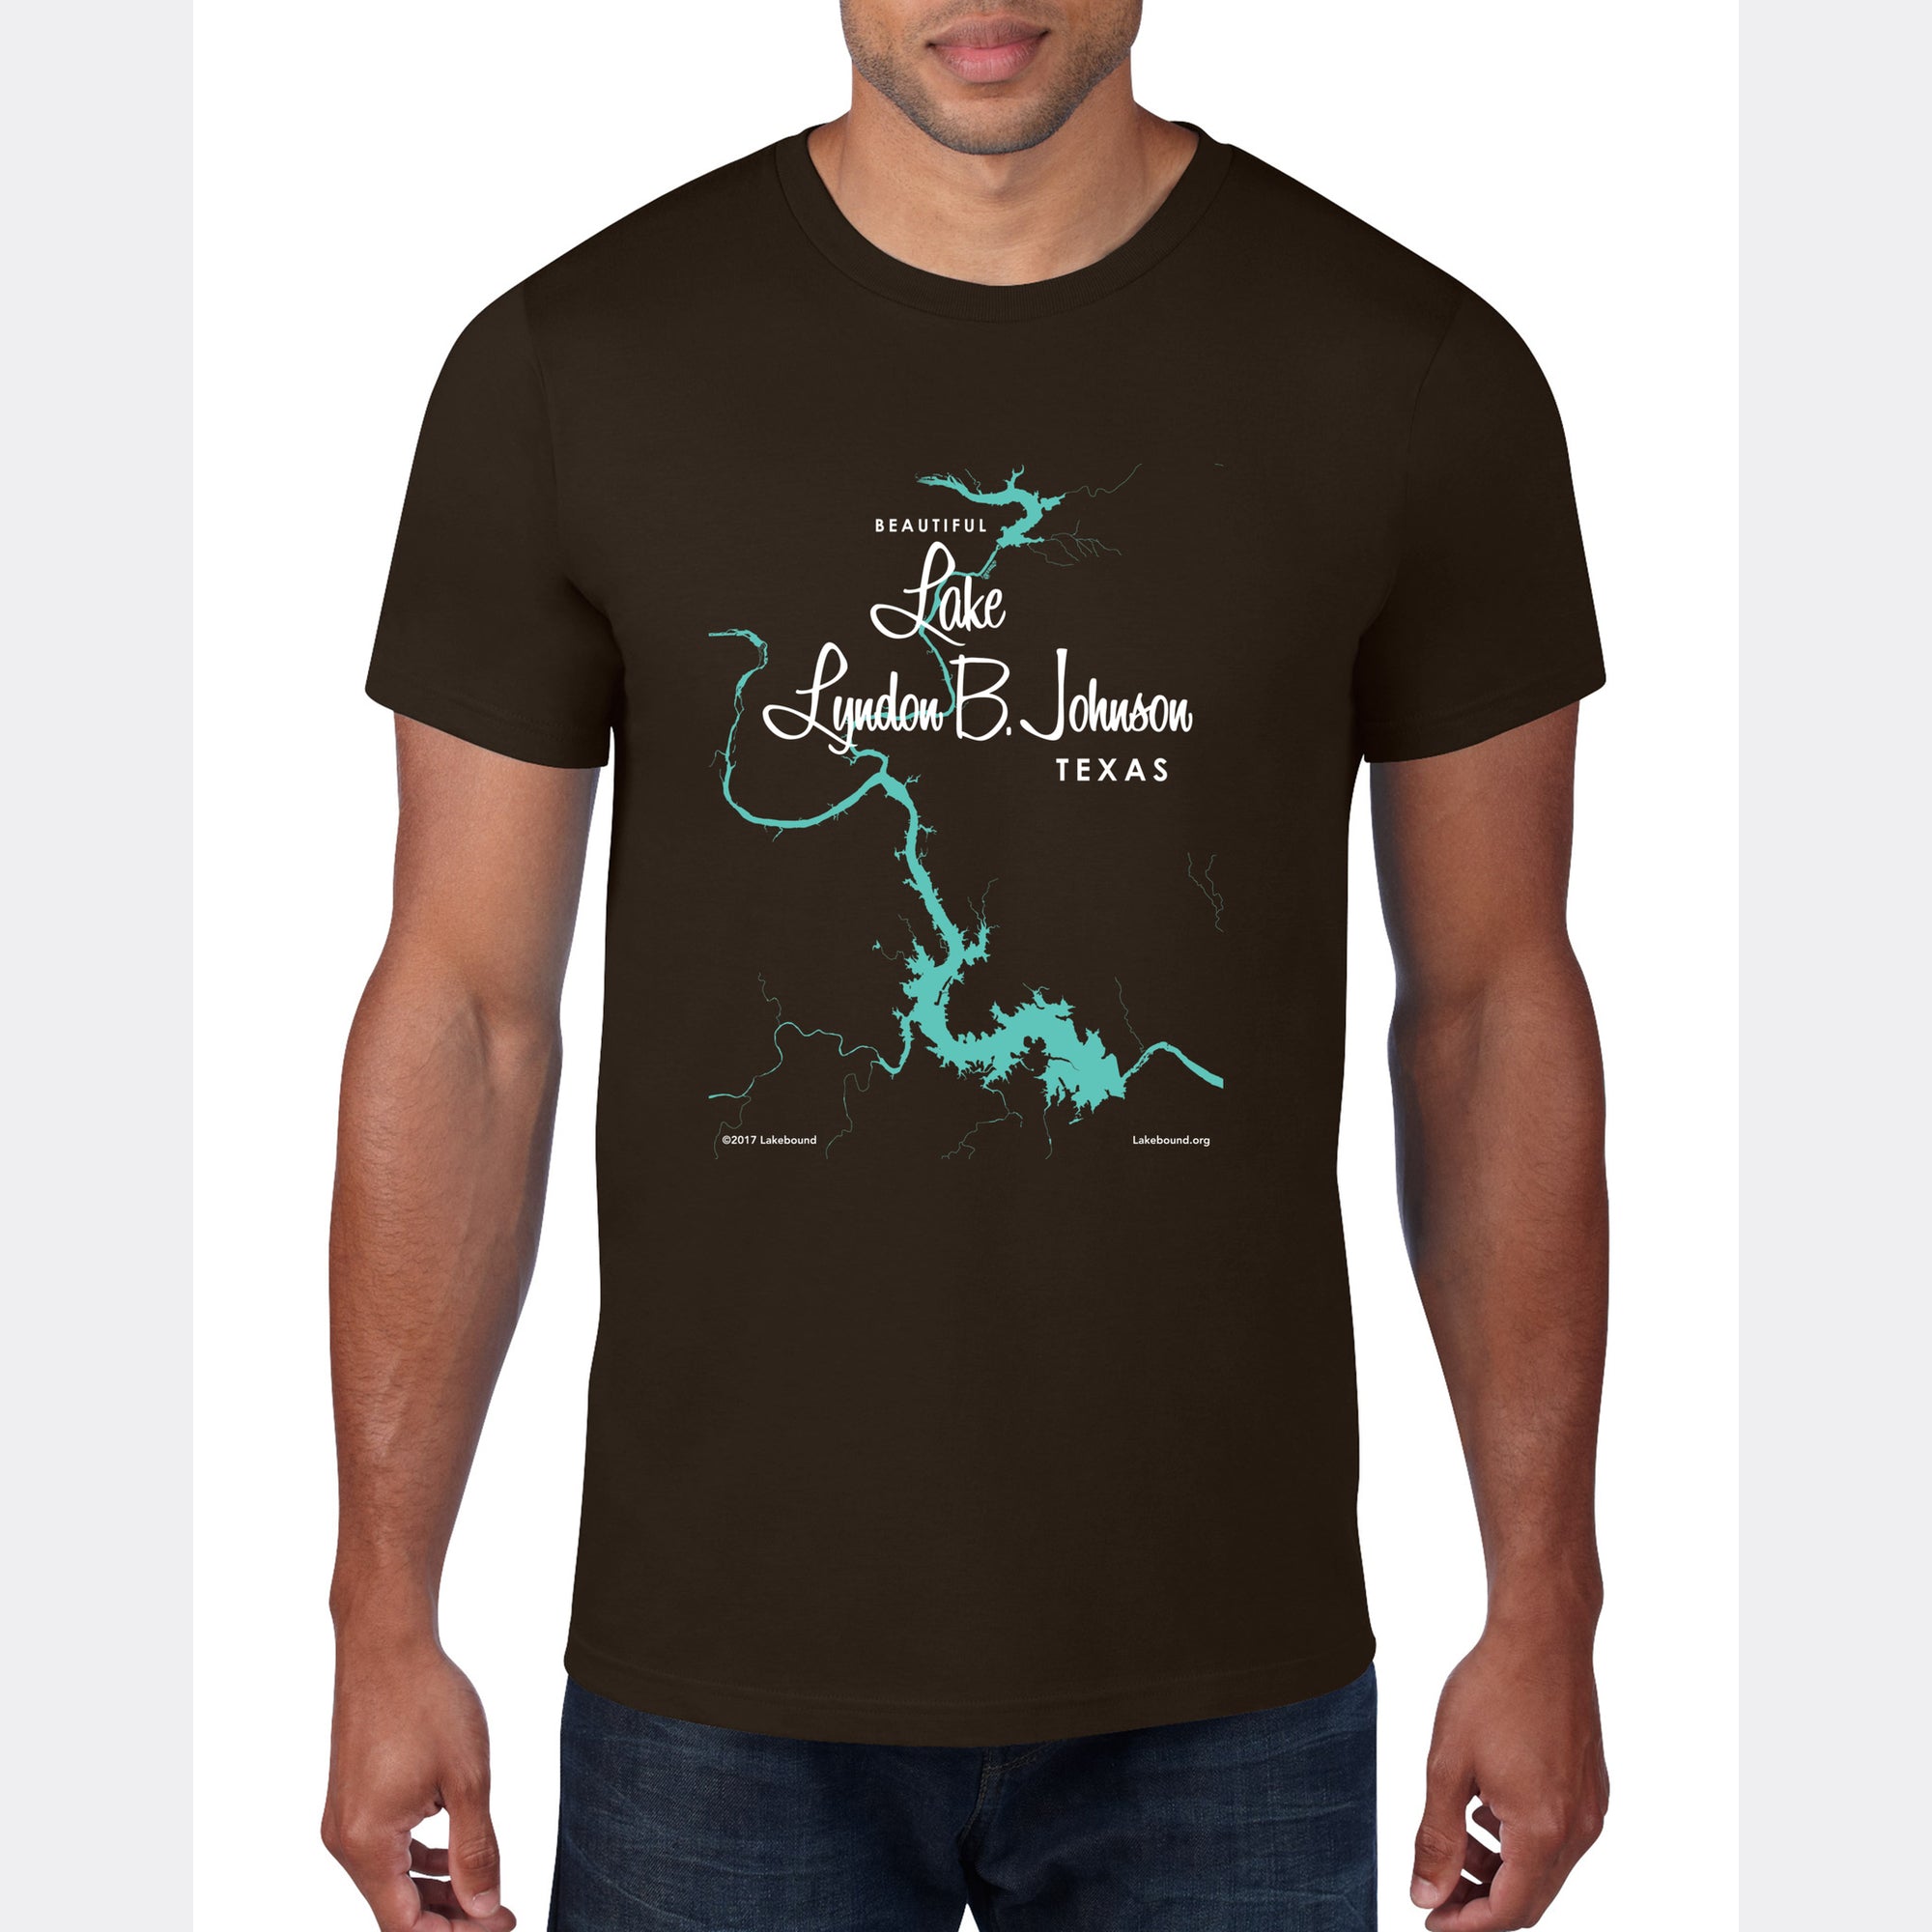 Lake LBJ Texas, T-Shirt